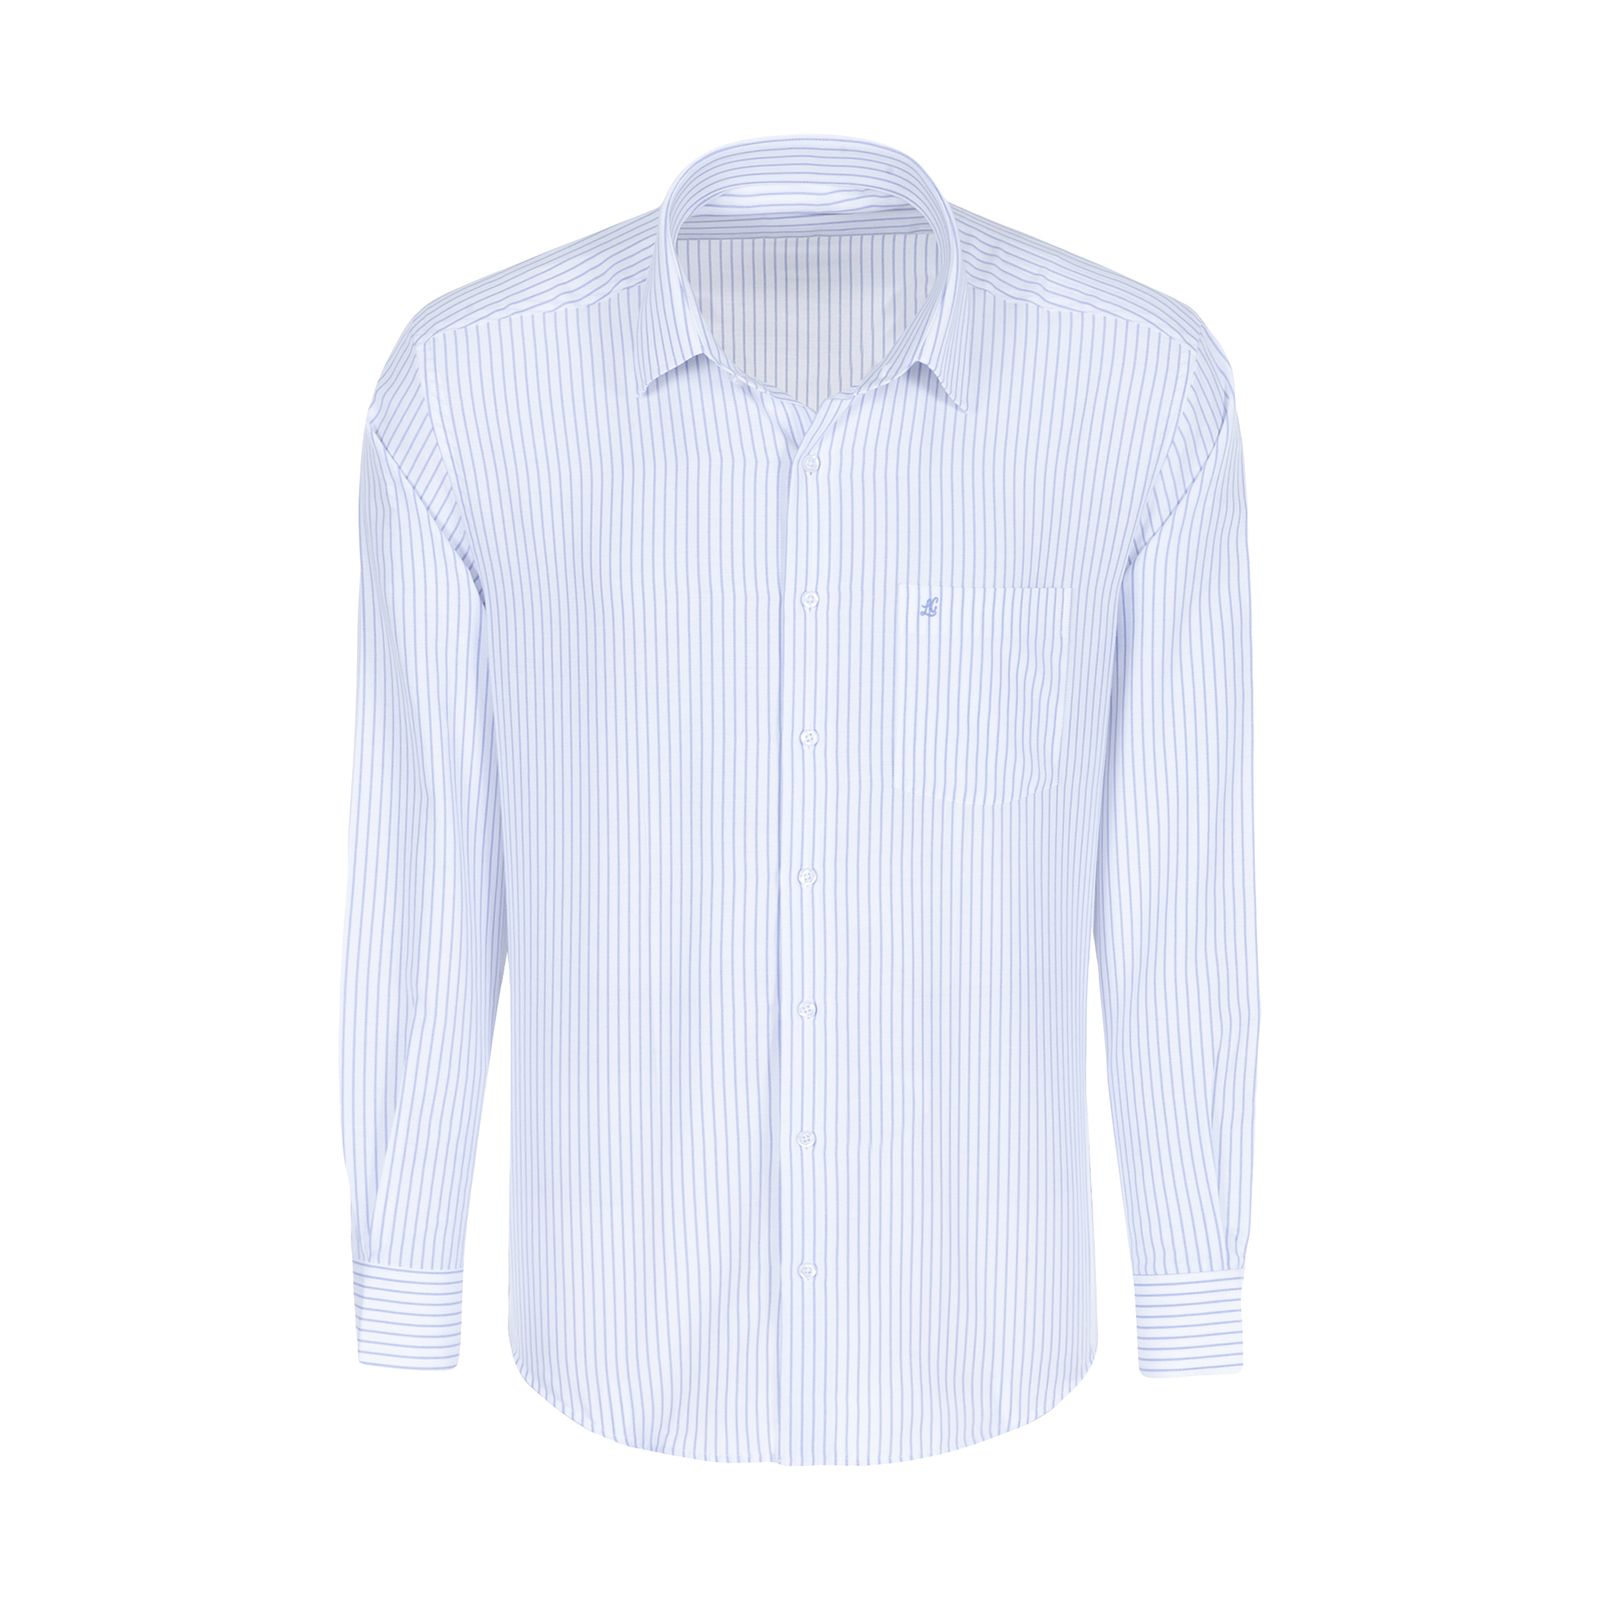 پیراهن آستین بلند مردانه ال سی من مدل 02181291-blue 175 -  - 1